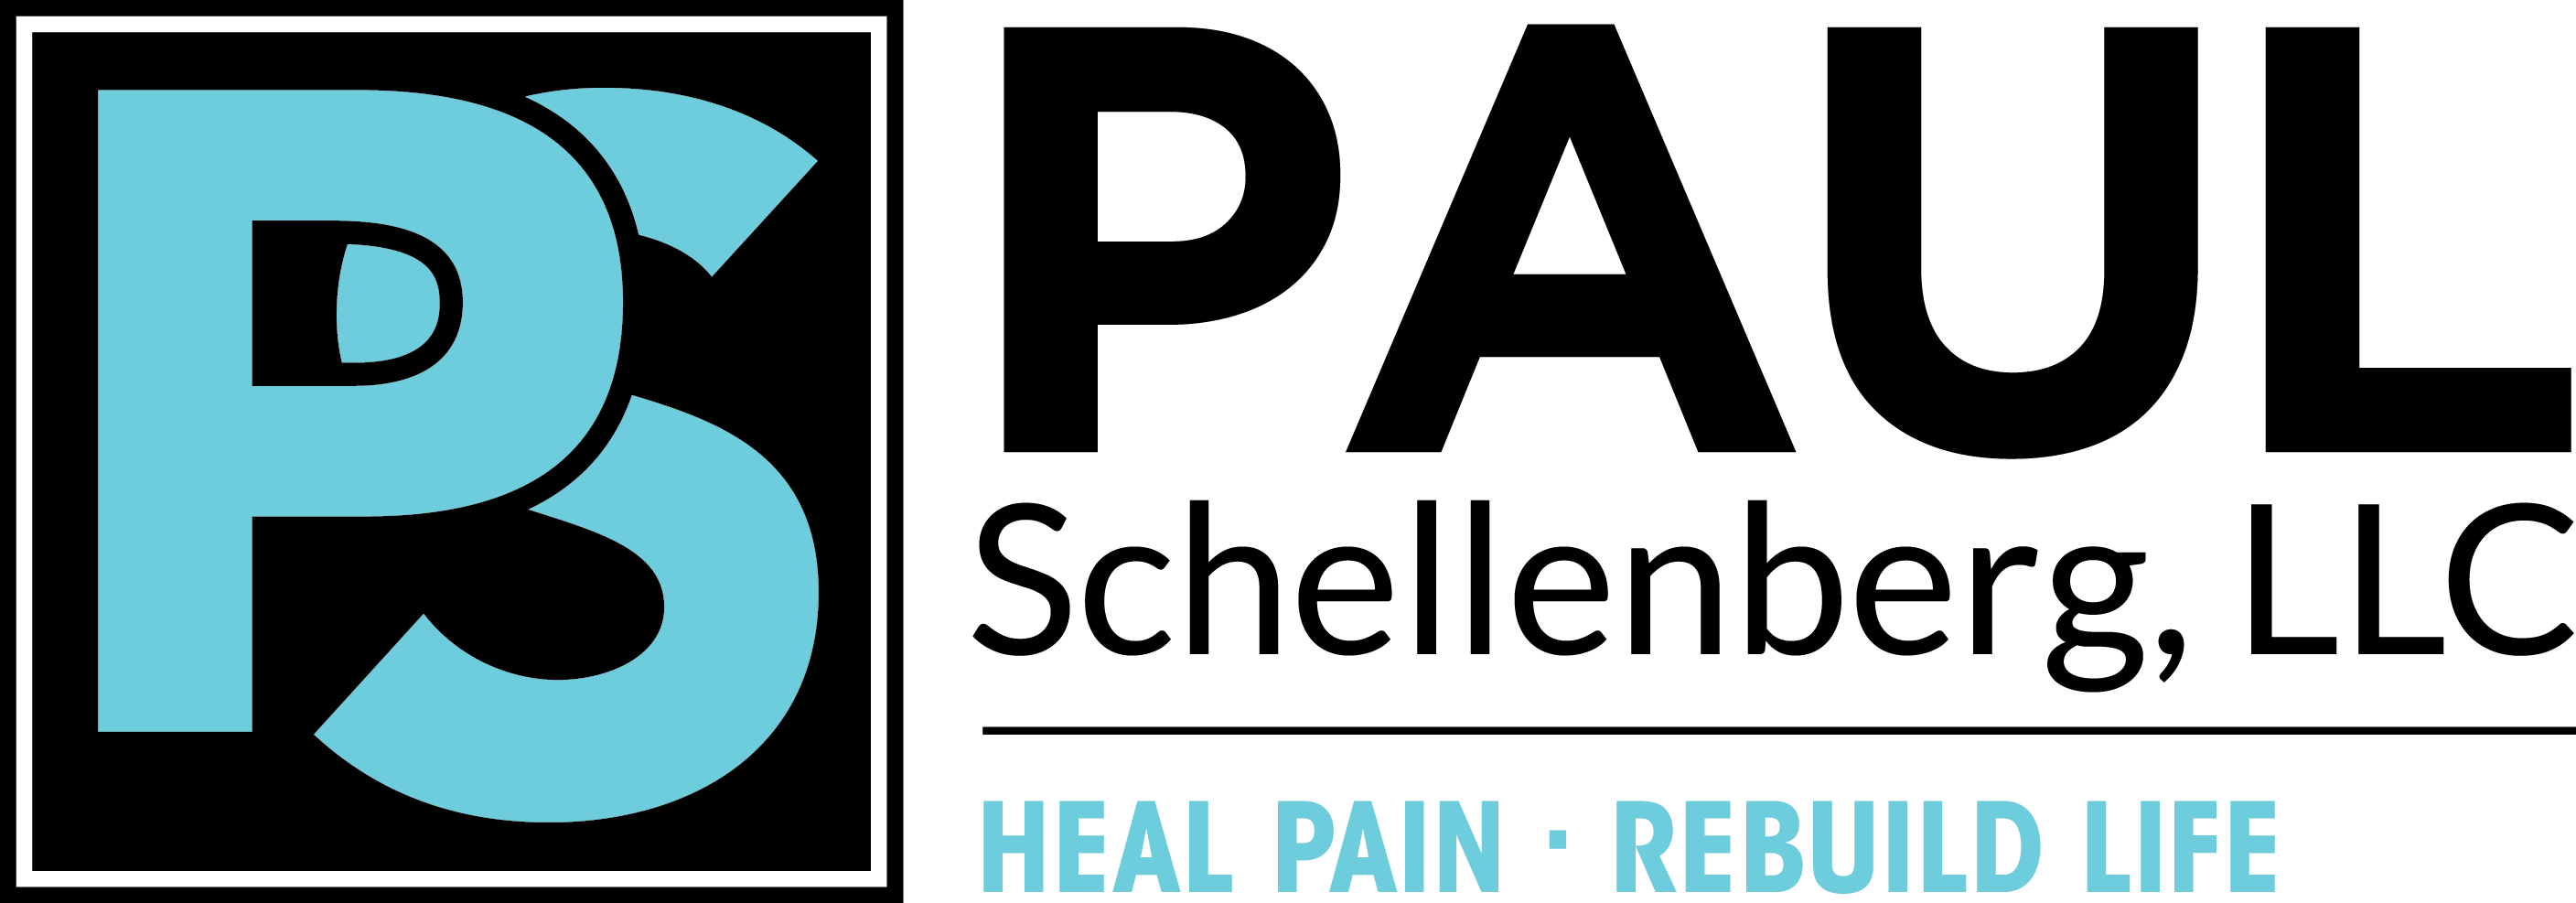 Paul Schellenberg, LLC